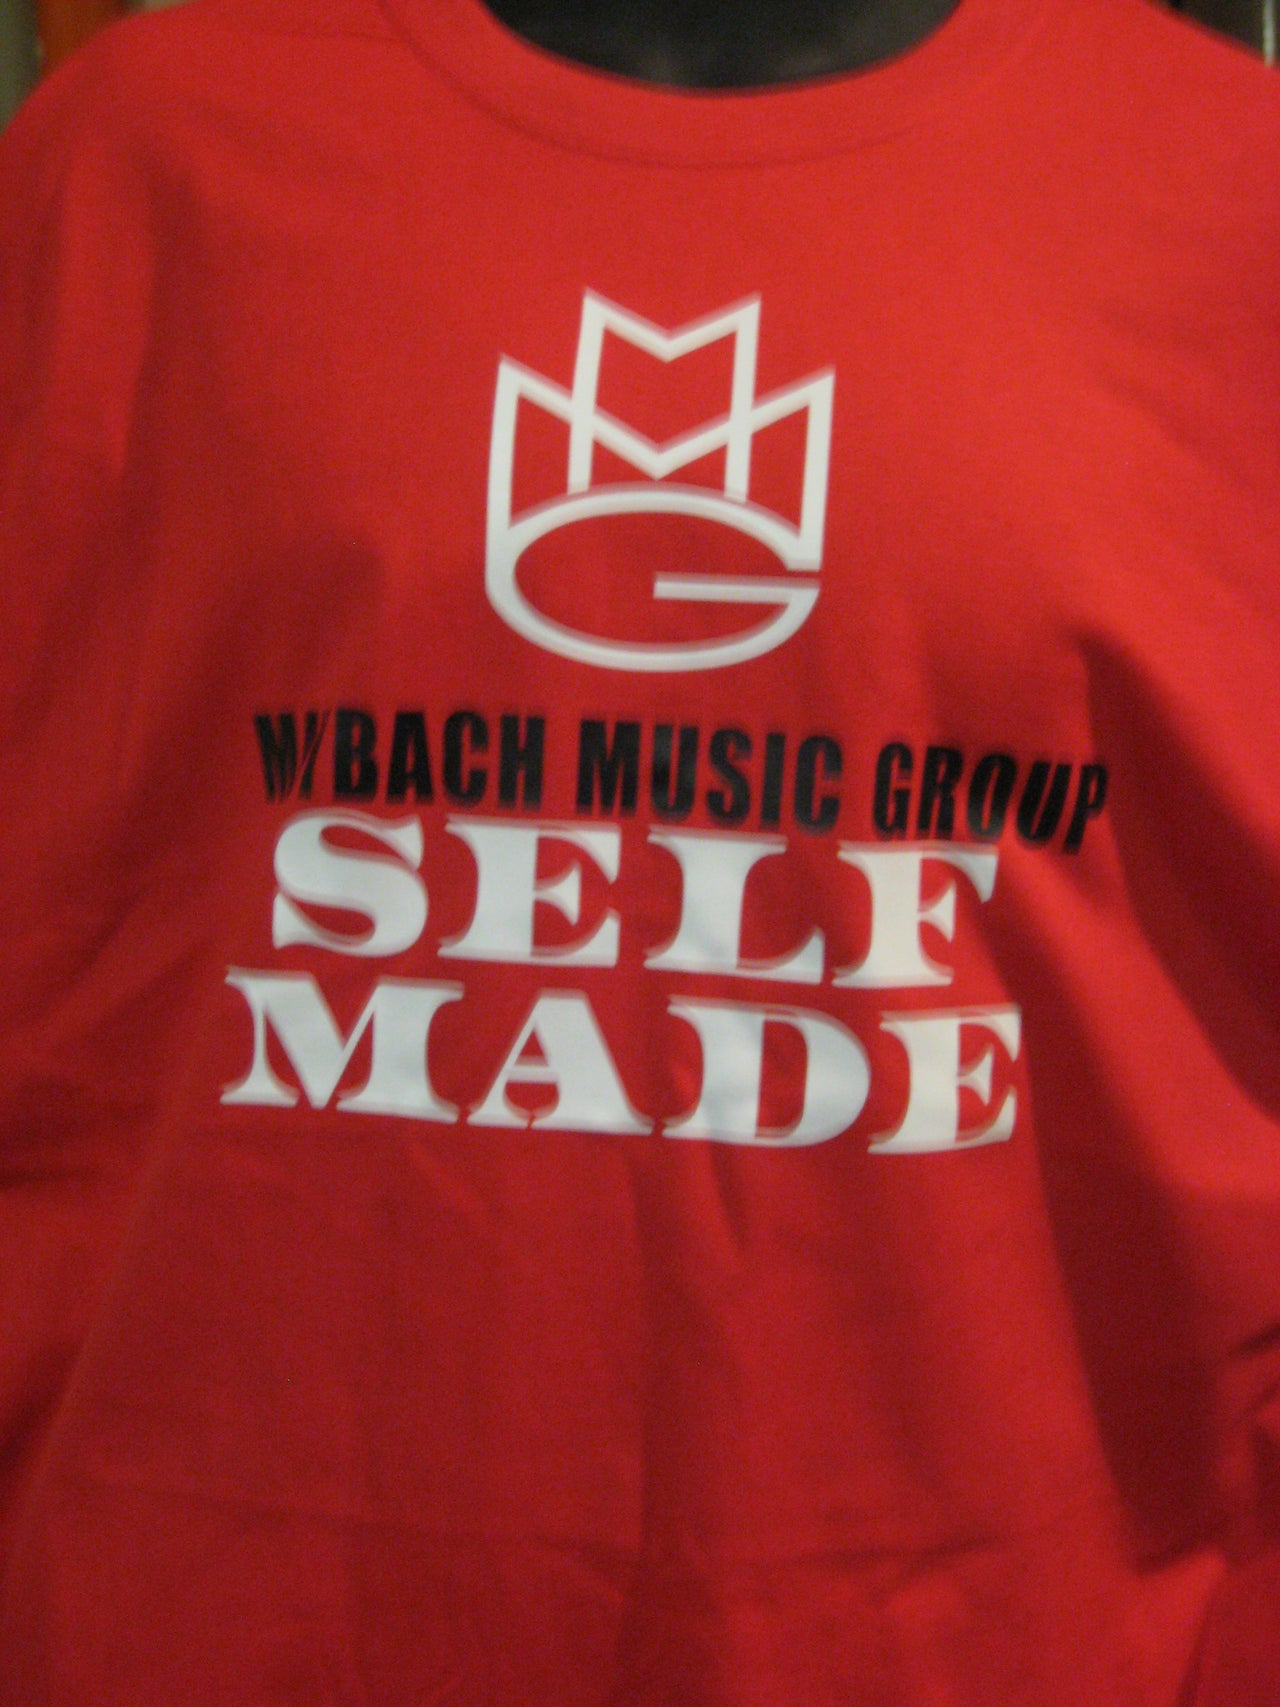 Maybach Music Group "Self Made" Tshirt - TshirtNow.net - 14